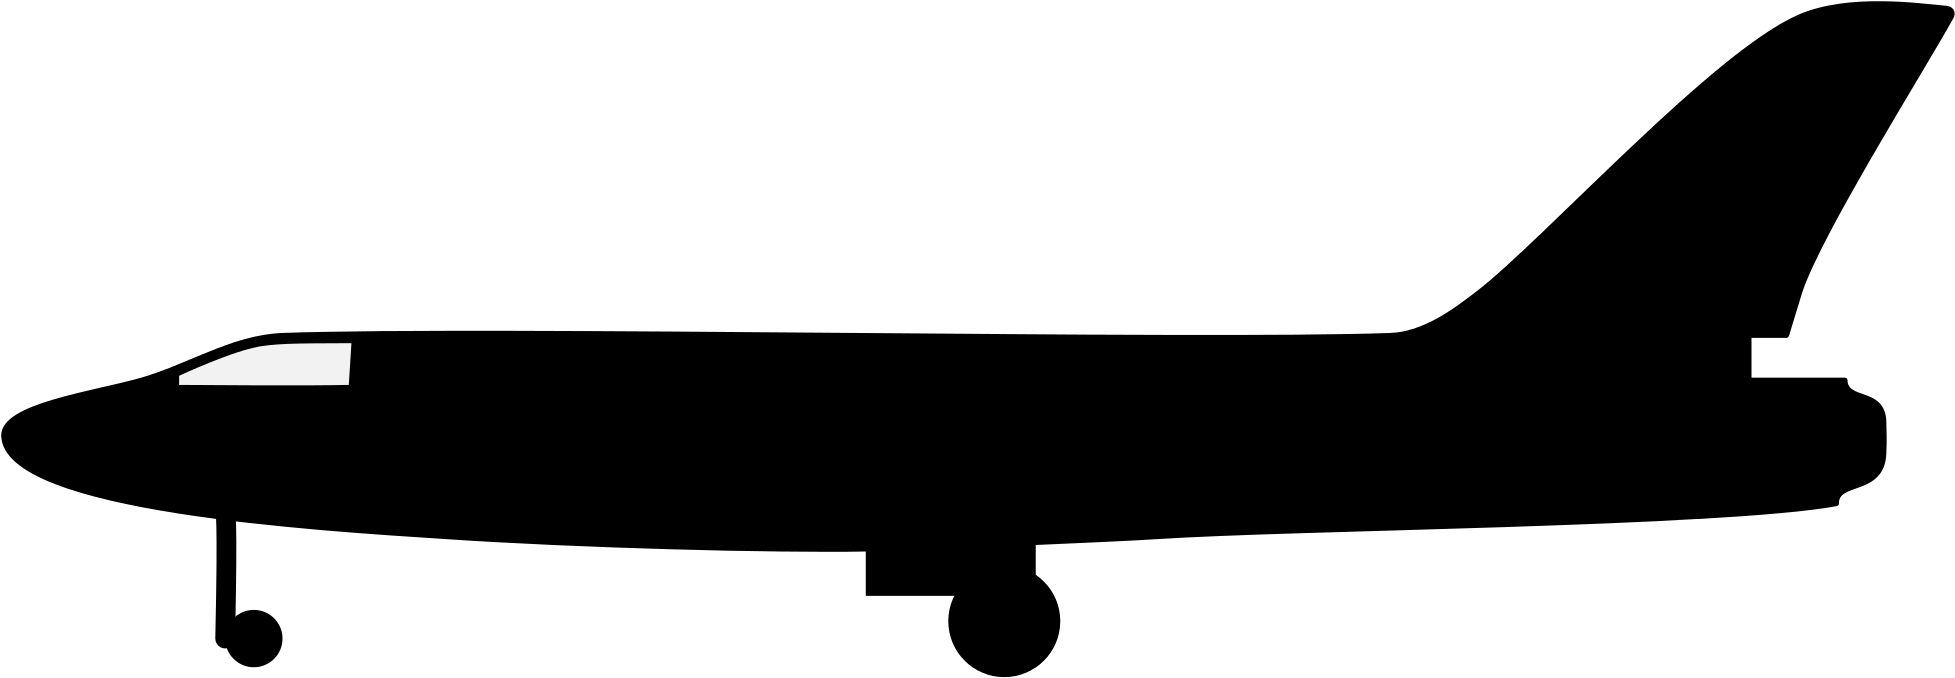 Filesilhouette Plane - Plane Silhouette (2000x716)